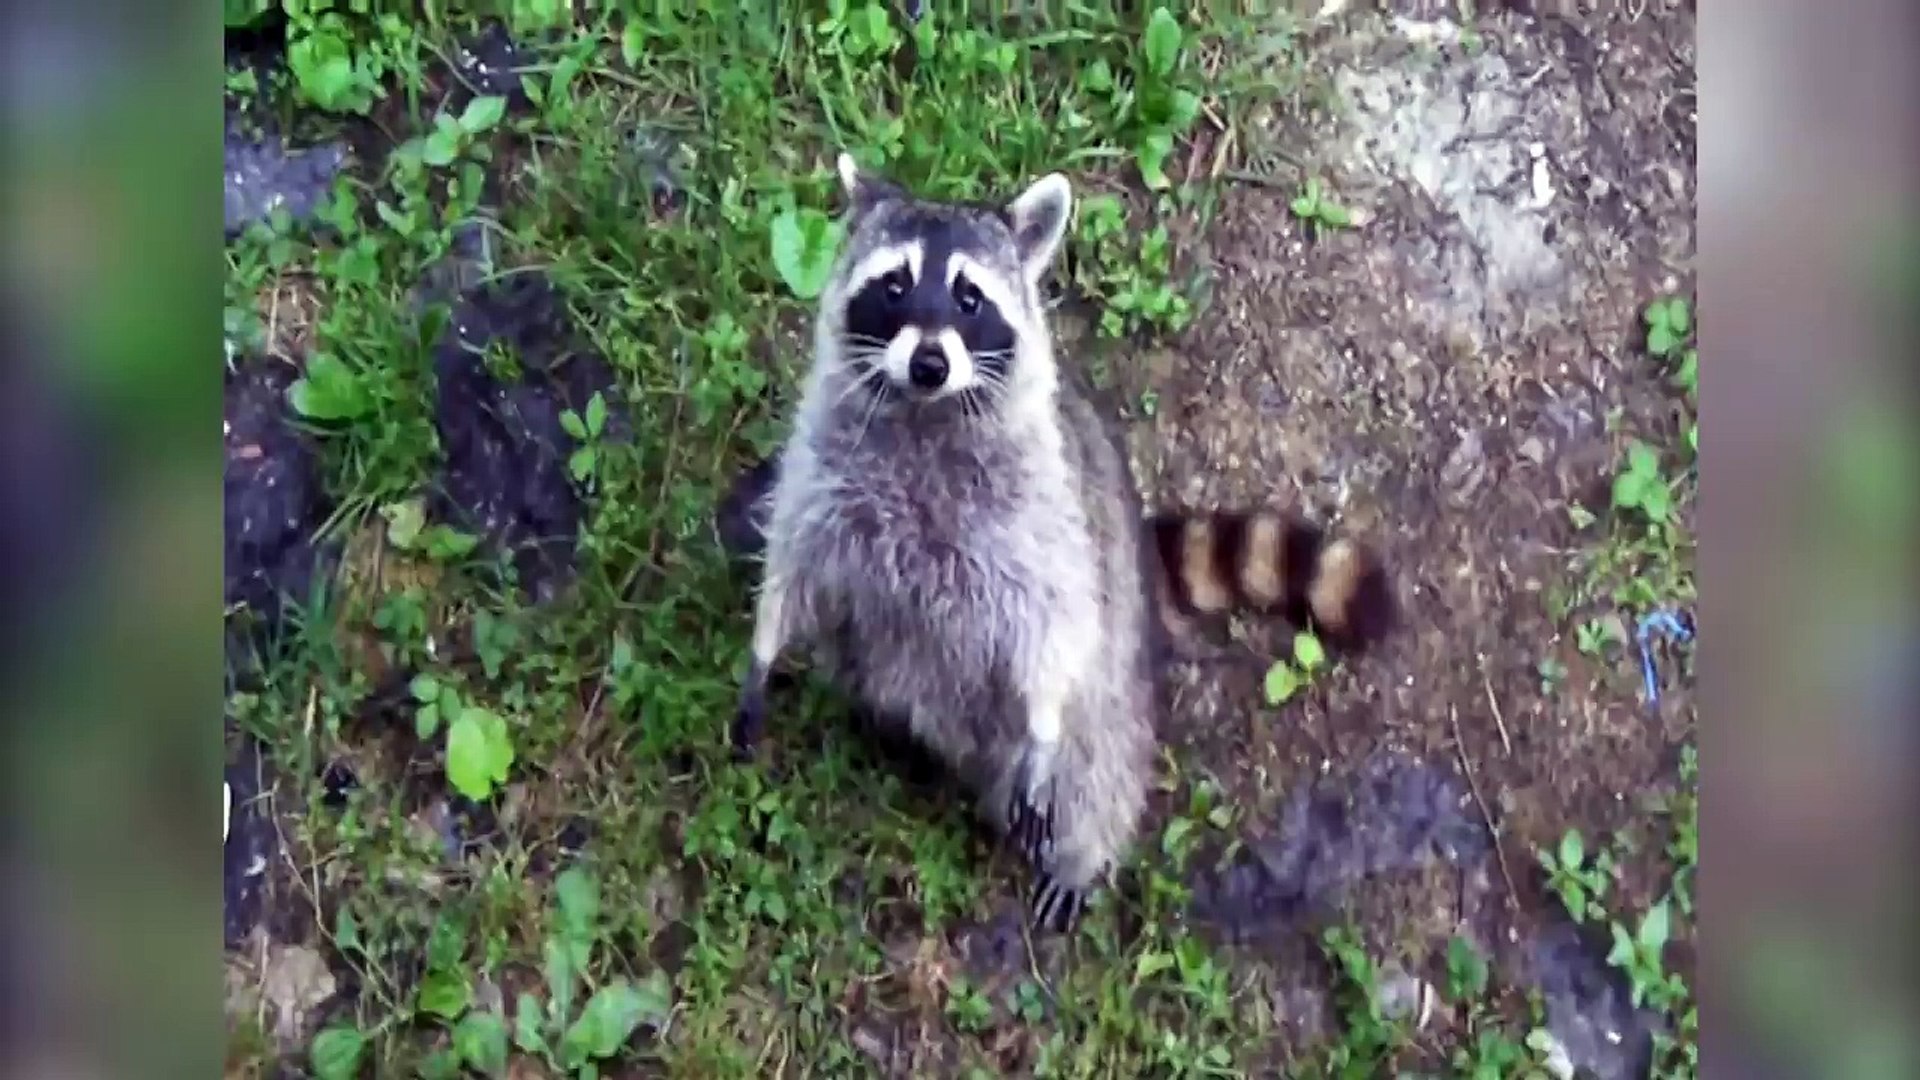 RACCOON STEALS DEER'S FOOD & MORE Funny Raccoon Videos of 2016 | Funny Pet Videos